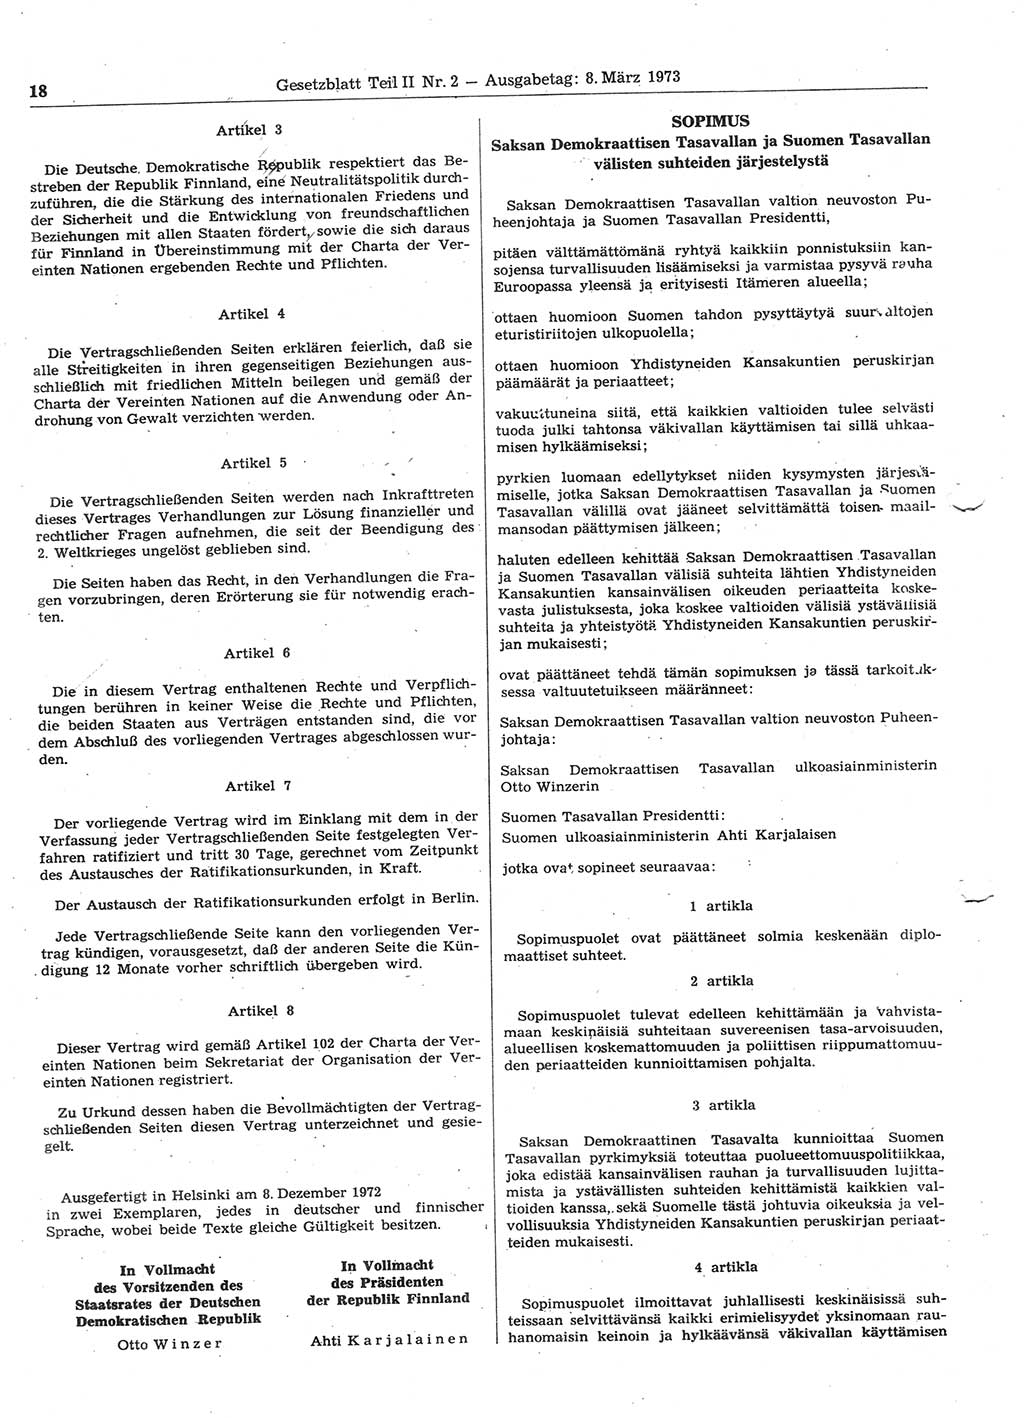 Gesetzblatt (GBl.) der Deutschen Demokratischen Republik (DDR) Teil ⅠⅠ 1973, Seite 18 (GBl. DDR ⅠⅠ 1973, S. 18)